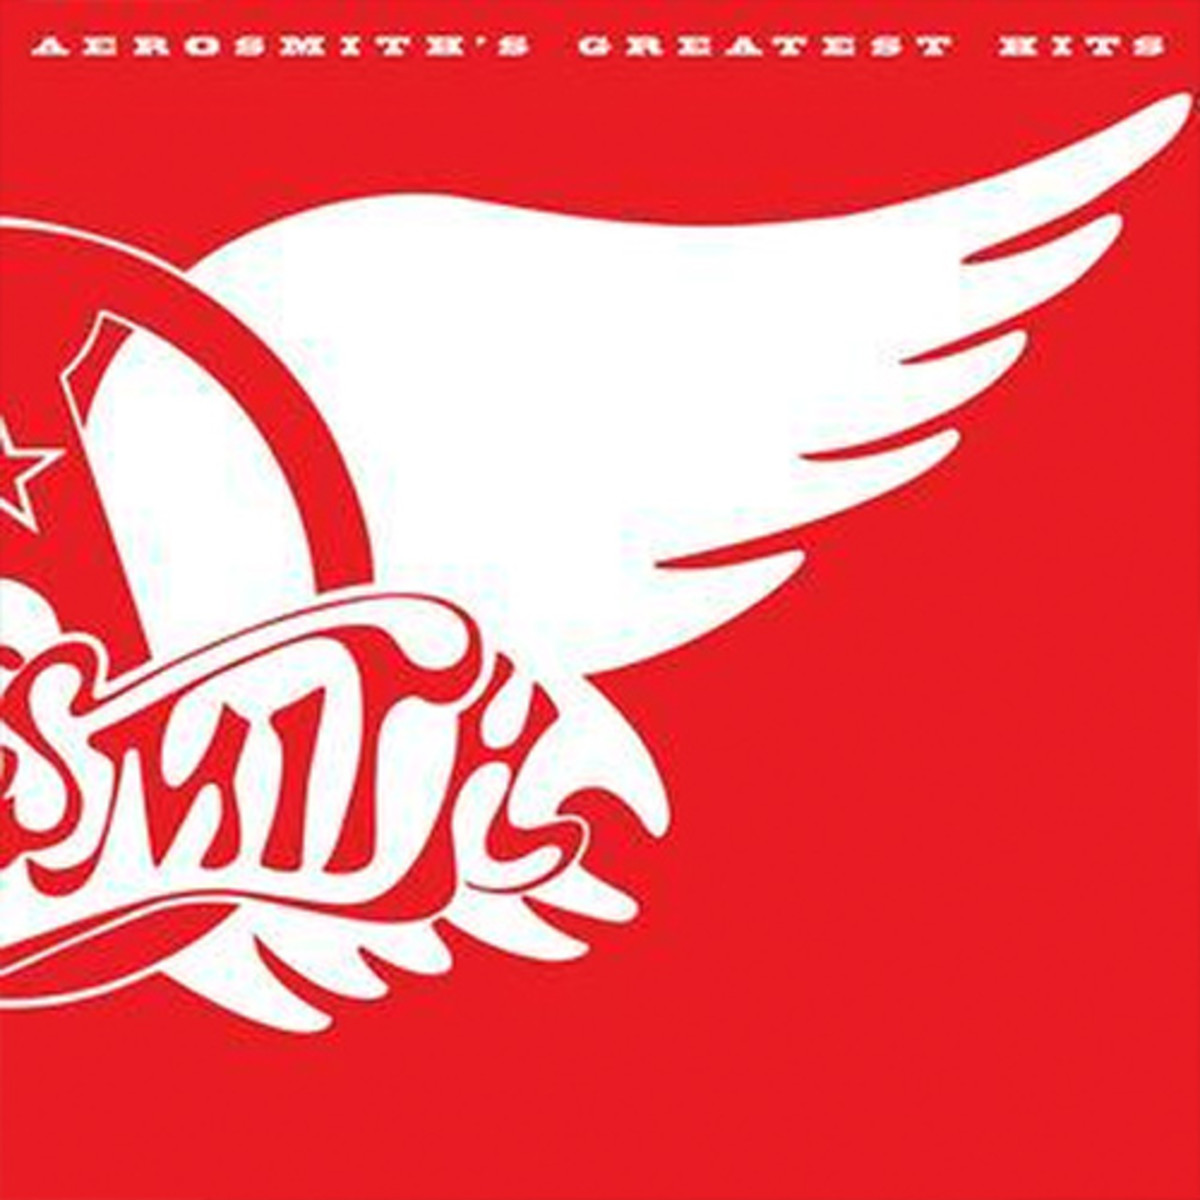 Aerosmith-GreatestHits